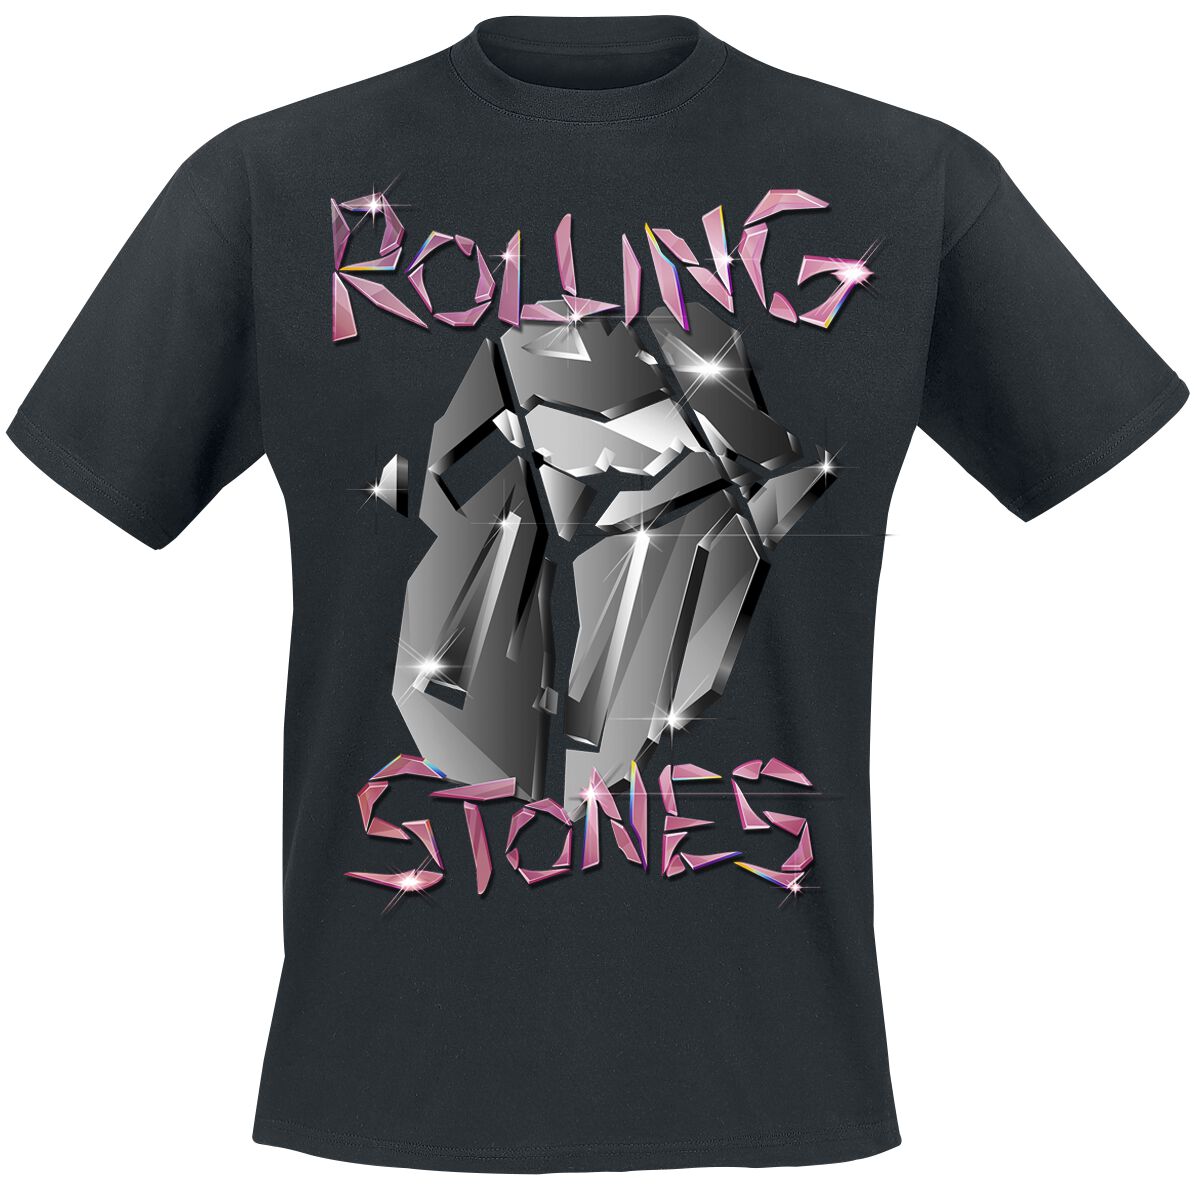 The Rolling Stones T-Shirt - Pop Up Tour Germany - Exclusive T-Shirt - S bis 3XL - für Männer - Größe L - schwarz  - EMP exklusives Merchandise!